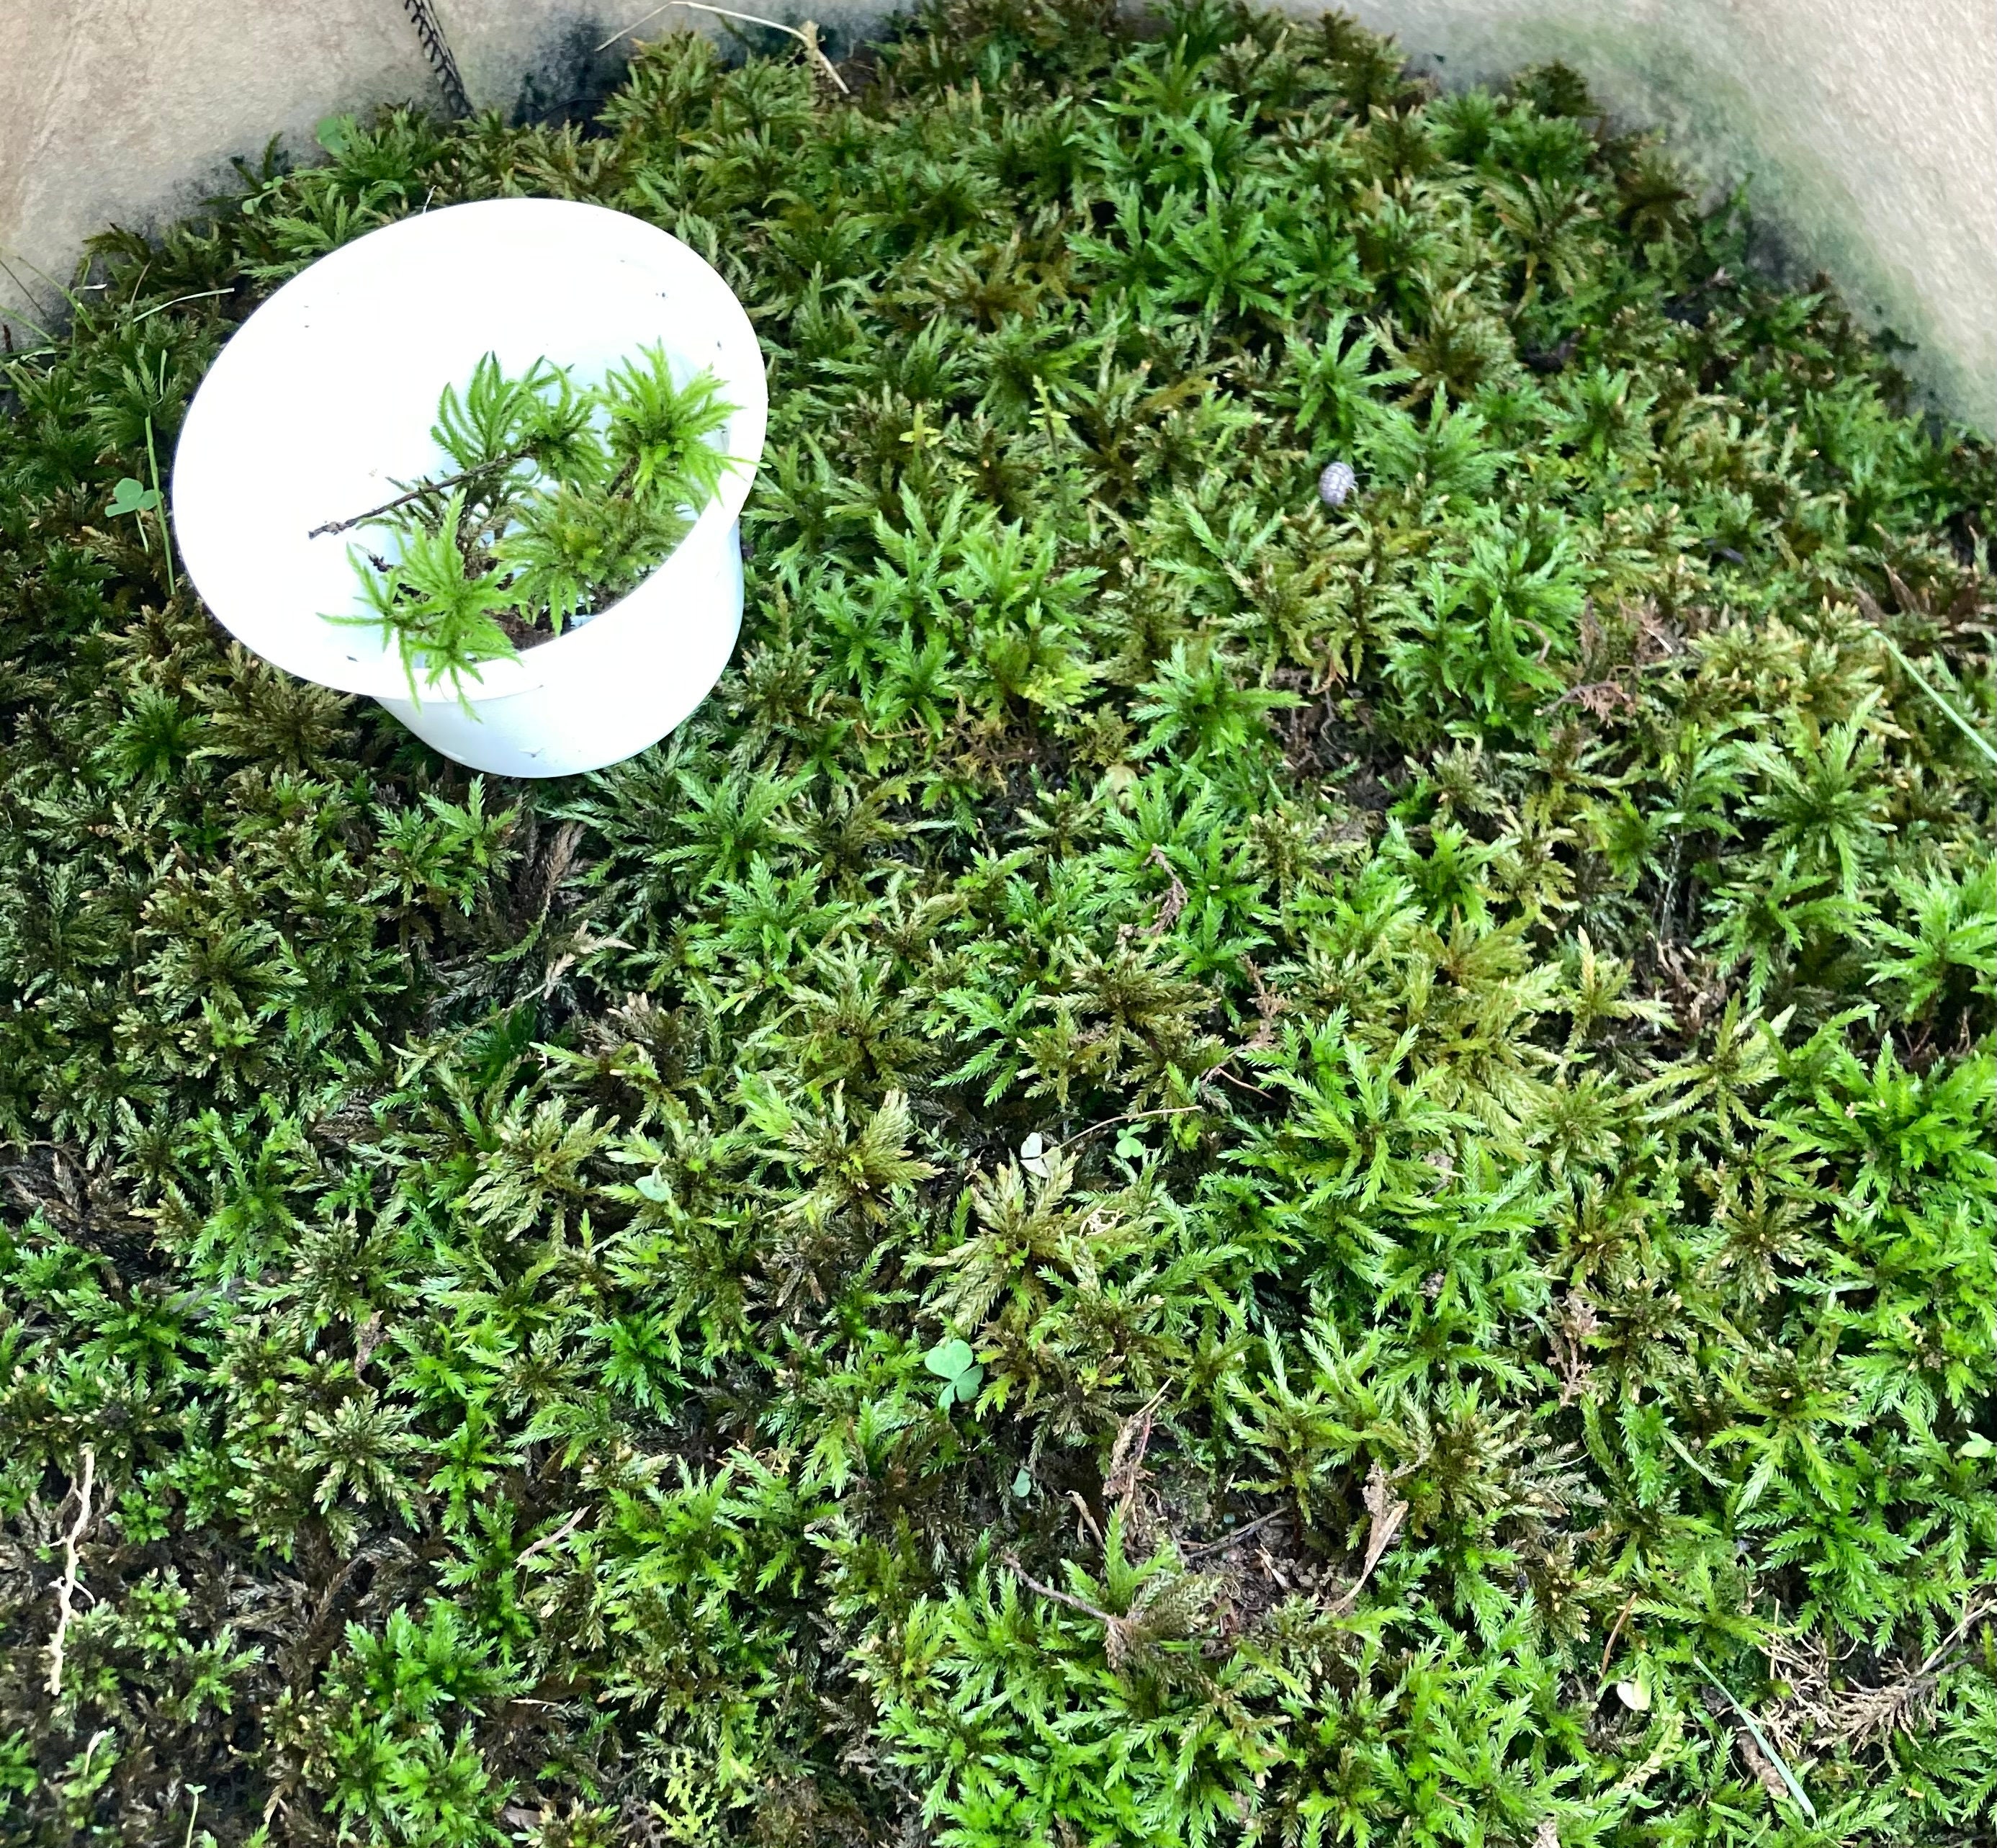 Brocade Moss (Hypnum Imponens) Live Moss for Terrarium Vivarium